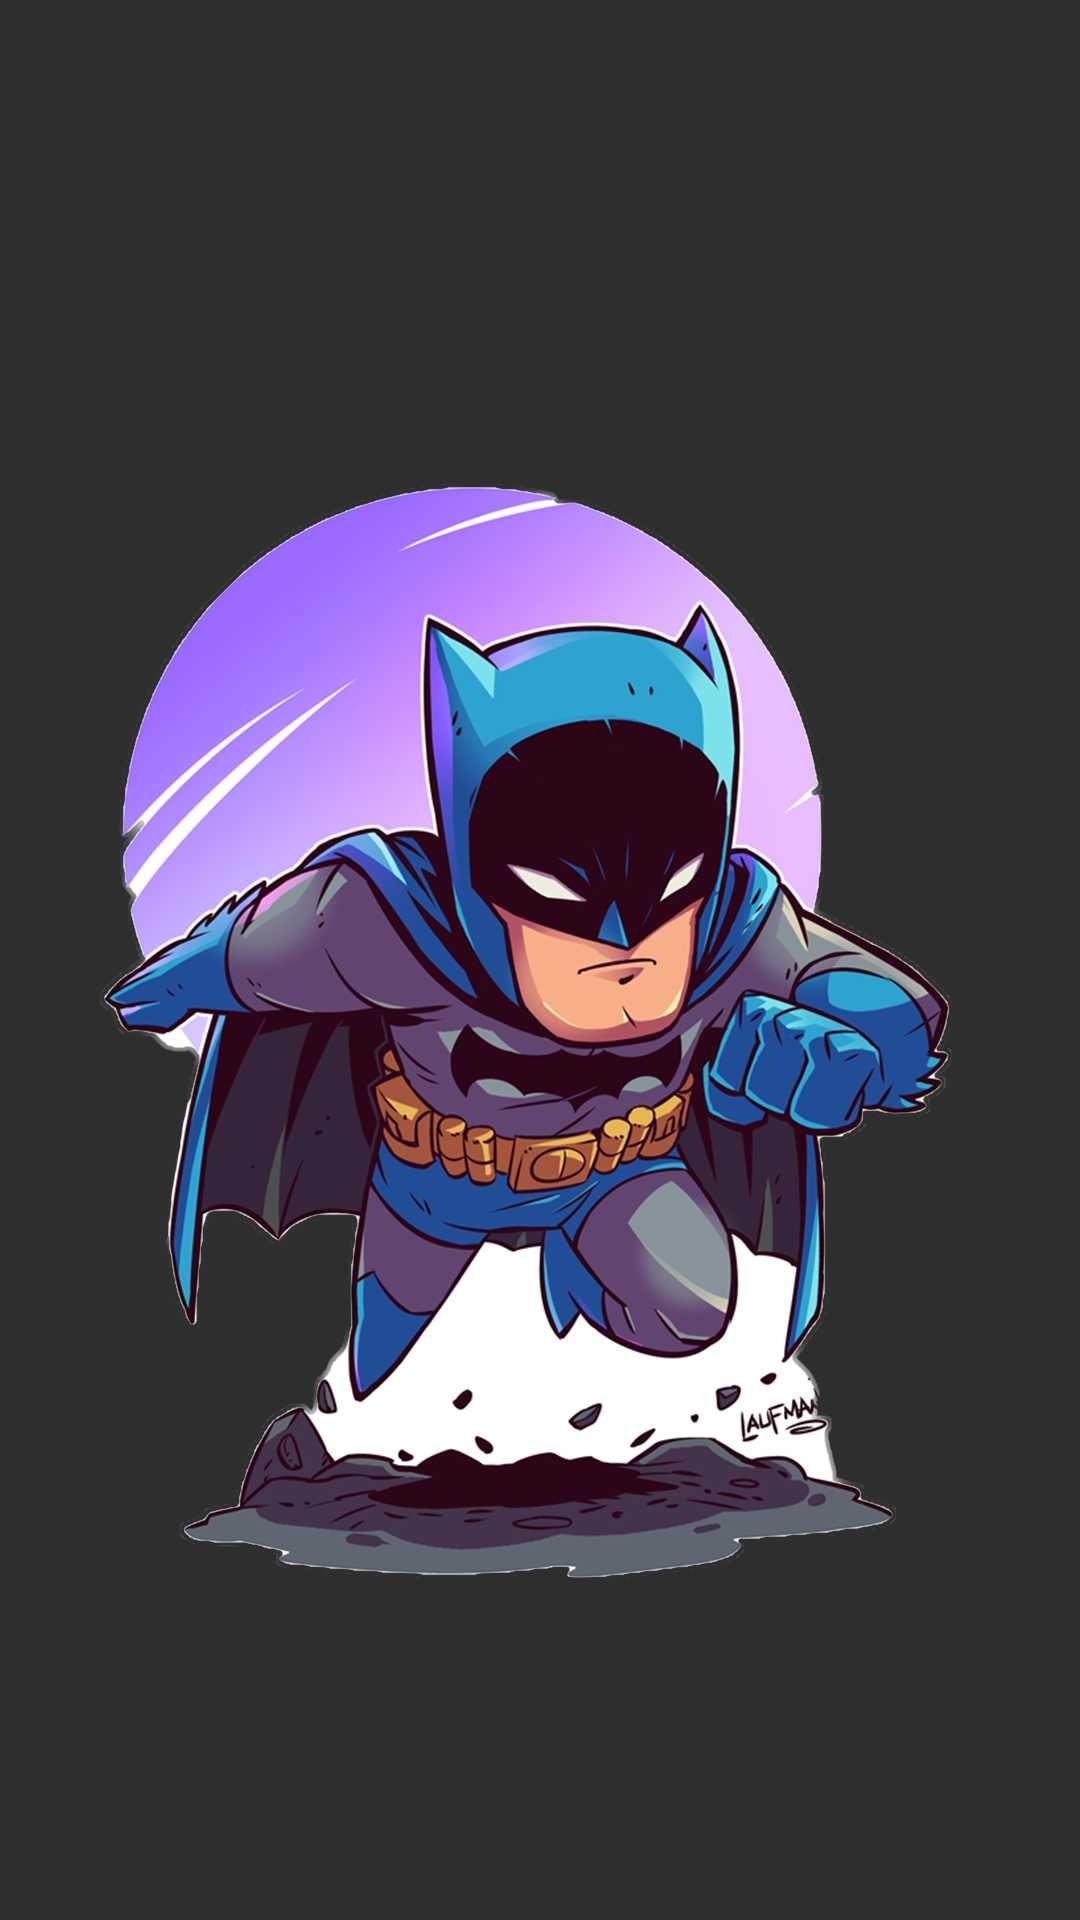 Batman Animated Art iPhone Wallpaper. ℚ U O T E S. Batman